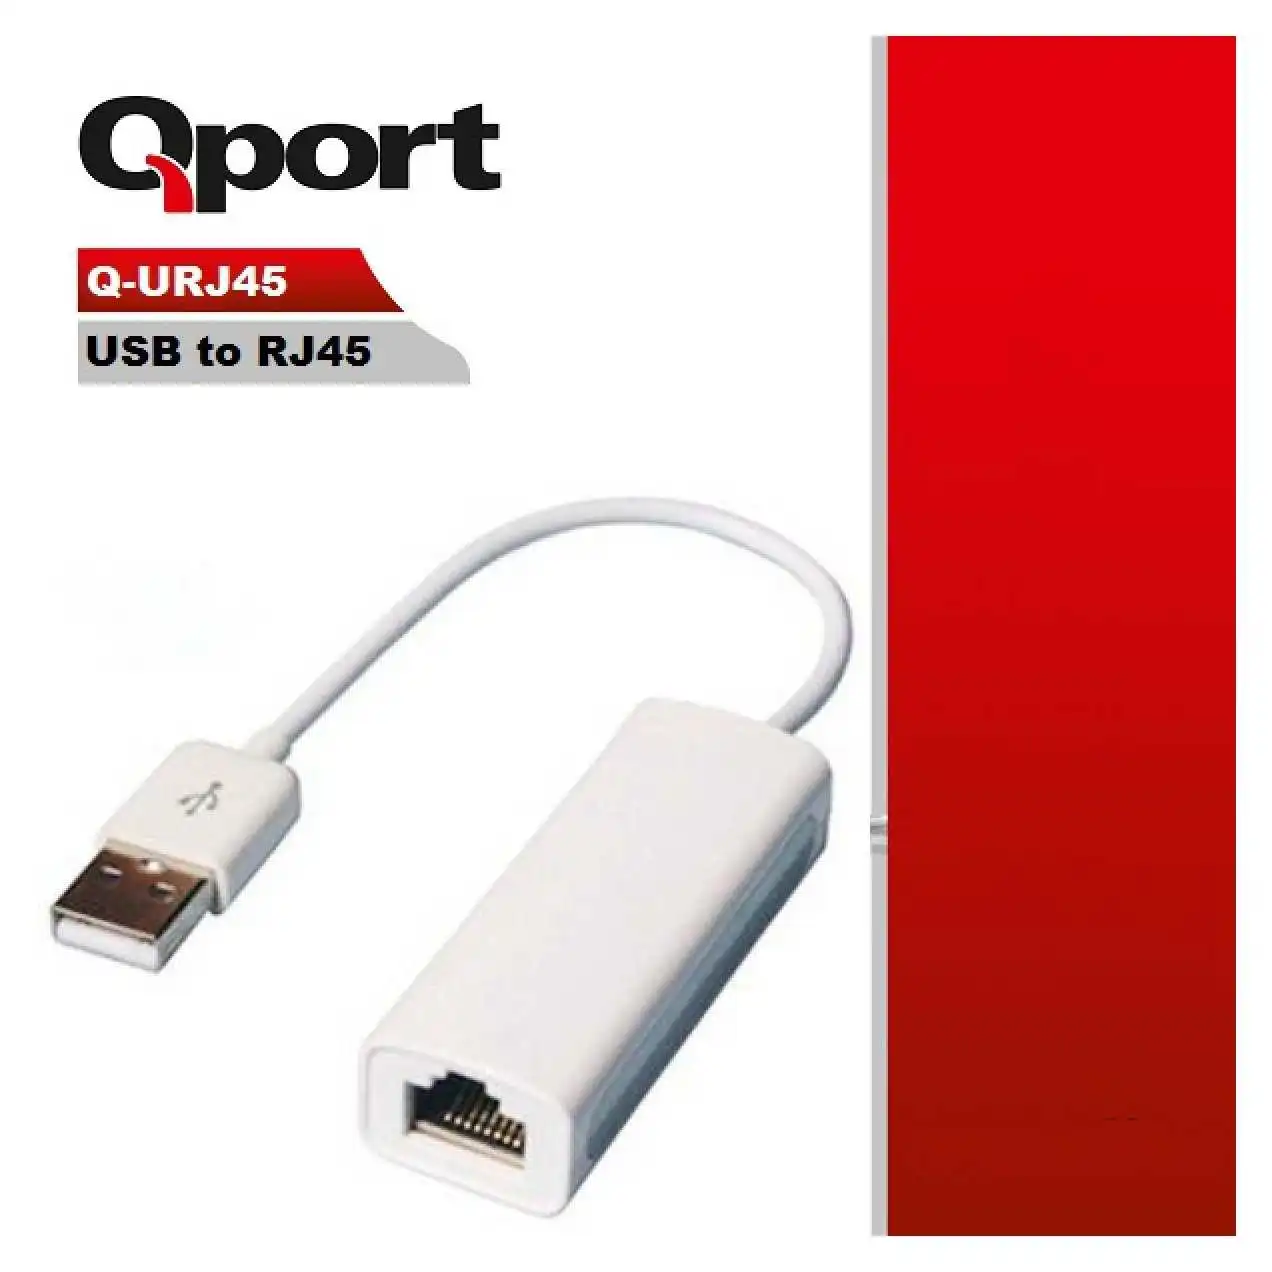 qport-q-urj45-usb-to-rj45-evrc-ürün-resmi-thumbnail